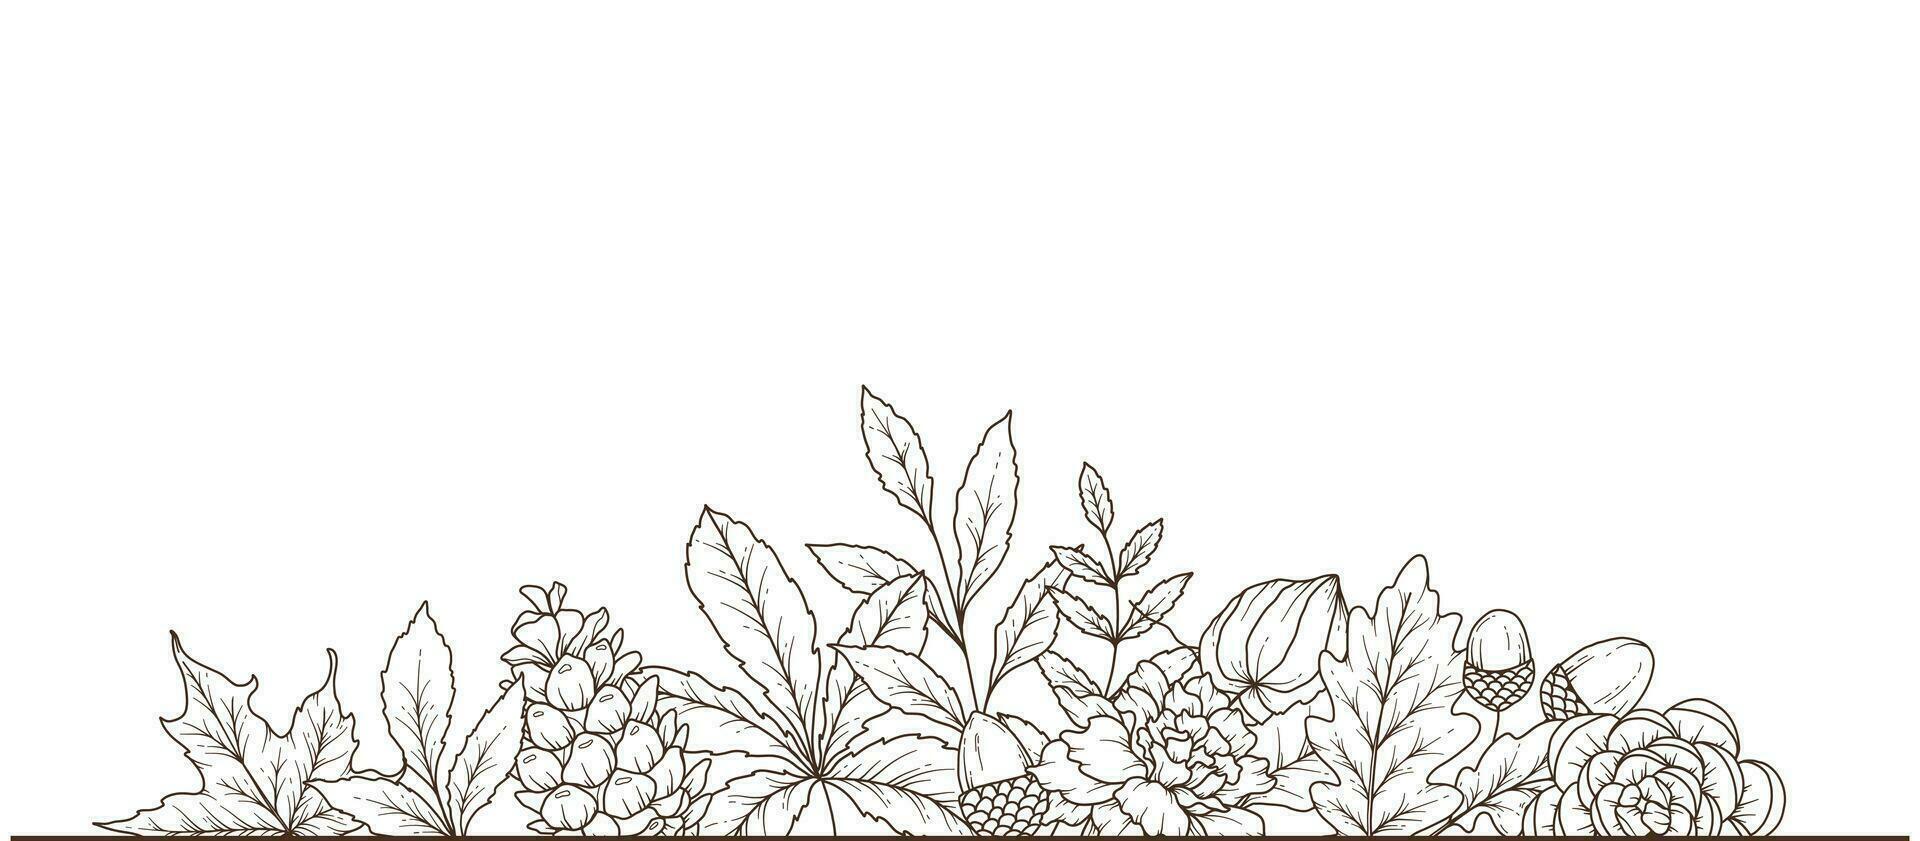 Fall floral frame outline. Fall Foliage Line Art Illustration, Outline Leaves arrangement Hand Drawn Illustration. Fall Coloring Page with Leaves vector